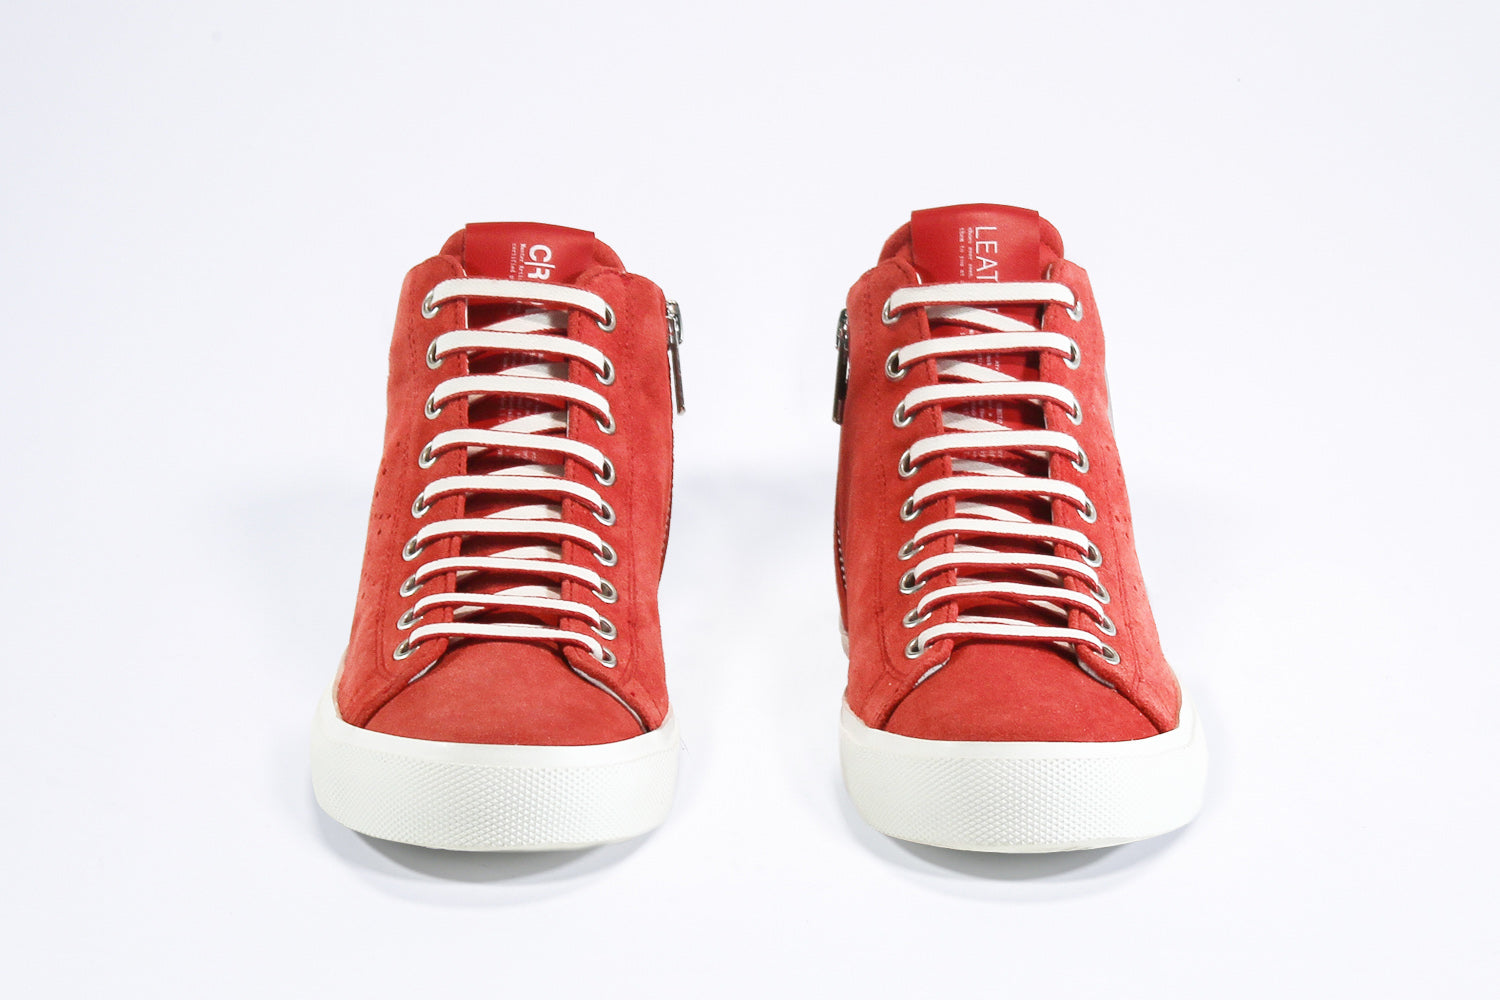 Vorderansicht des Mid-Top sneaker aus rotem Wildleder und Leder, Innenreißverschluss und weißer Sohle.